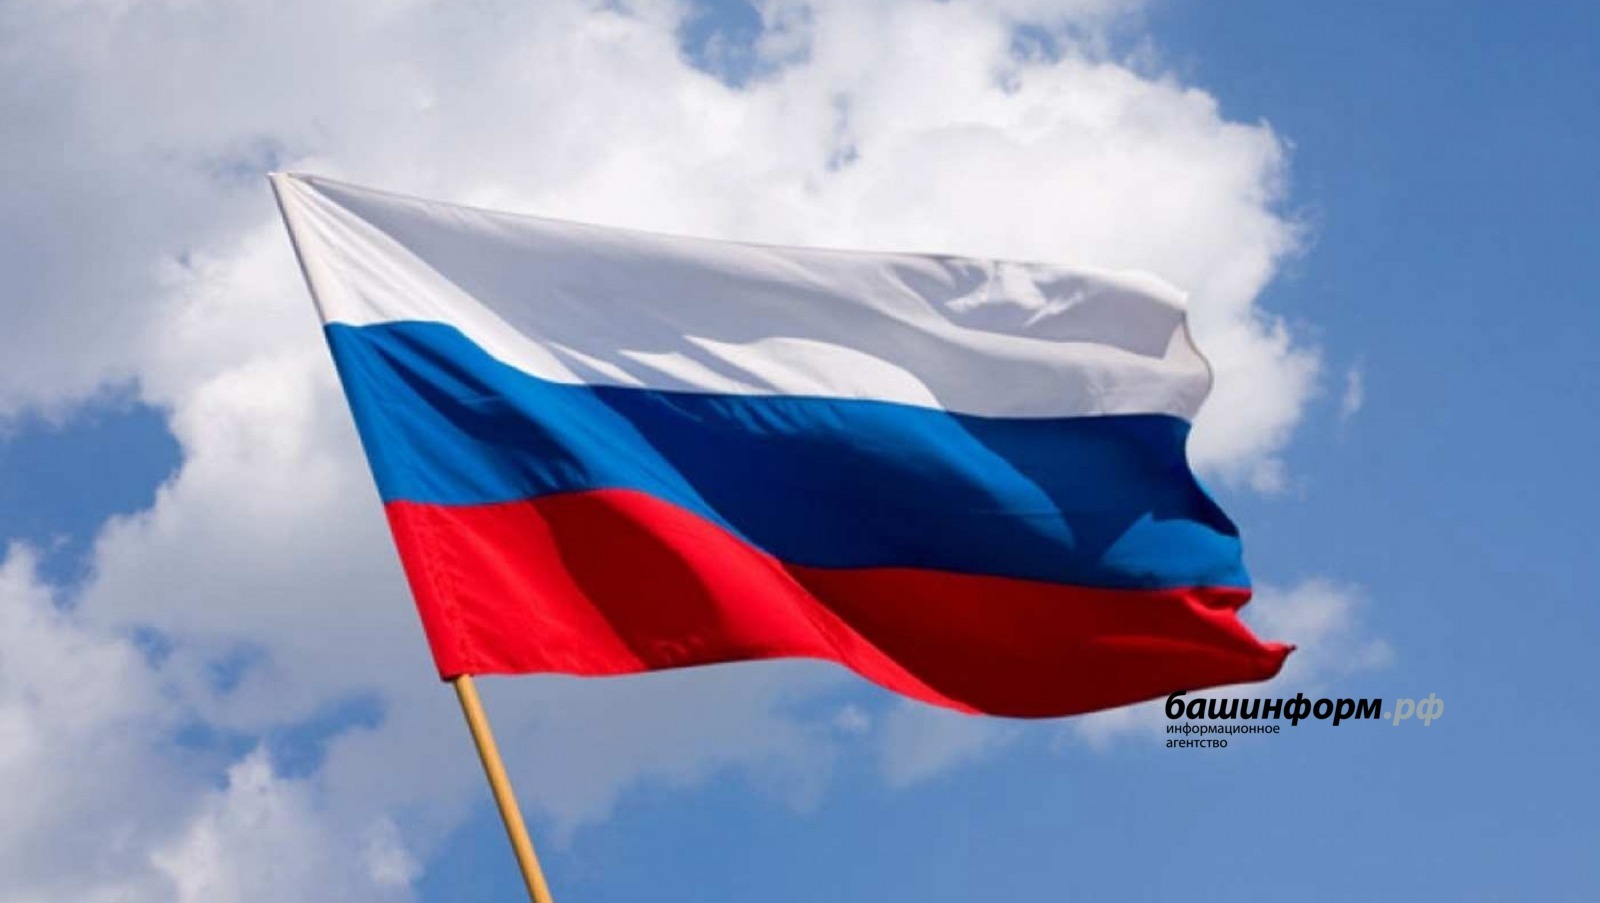 22 августа в Уфе состоится автопробег «Вперед, Россия!» в честь Дня государственного флага